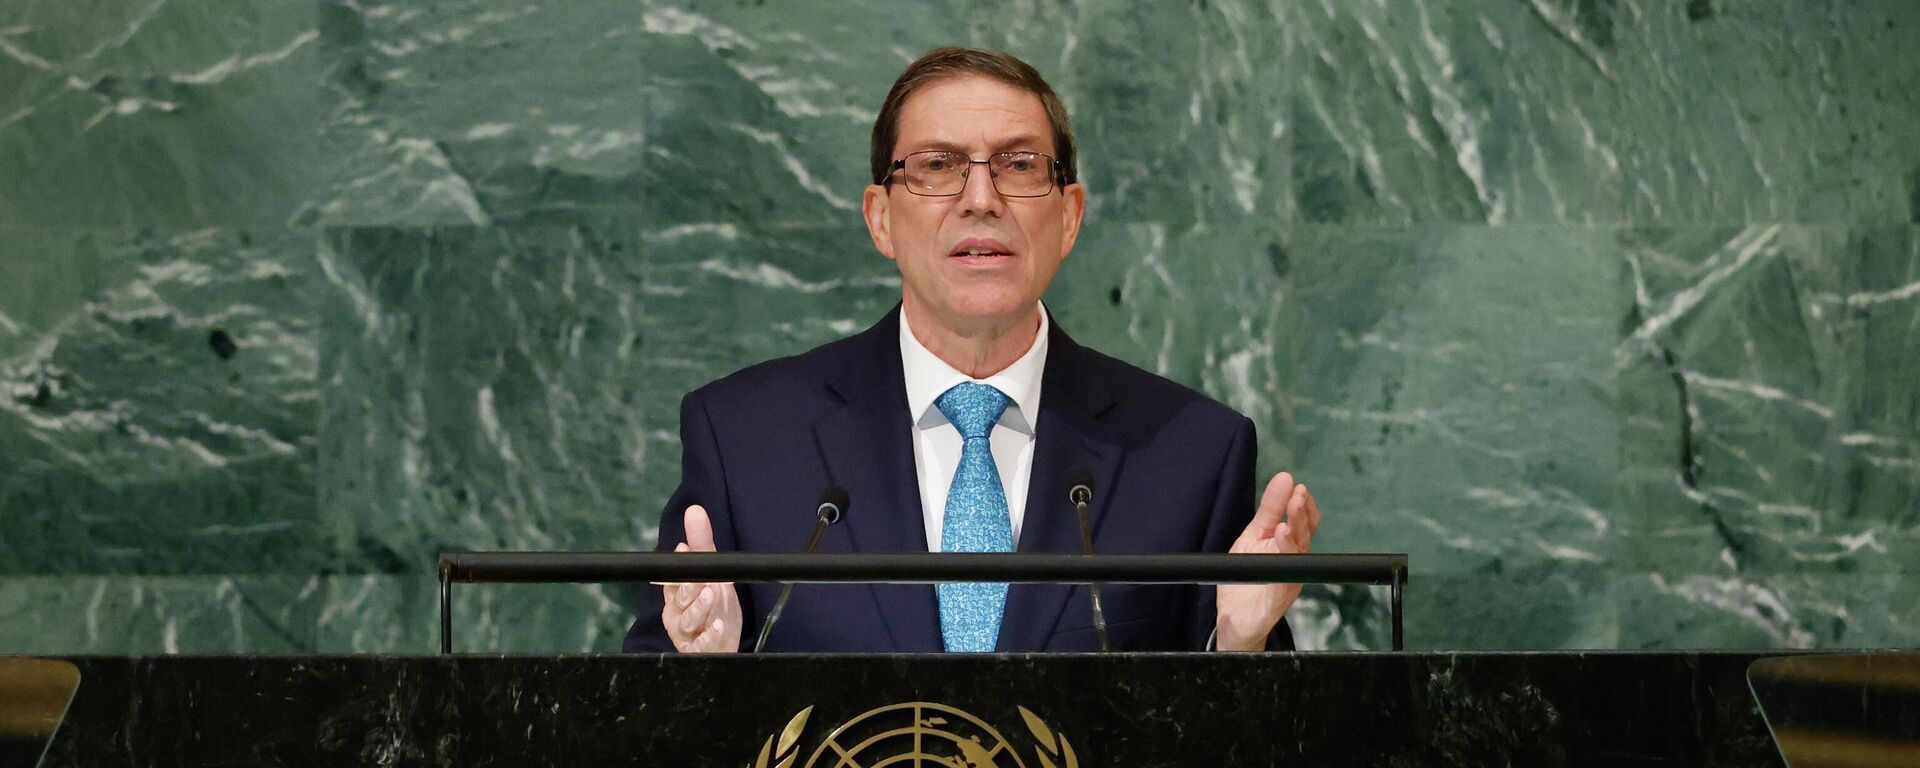 O chanceler de Cuba, Bruno Rodriguez Parrilla, discursa durante a 77ª sessão da Assembleia Geral da ONU. Nova Iorque, 21 de setembro de 2022. - Sputnik Brasil, 1920, 21.09.2022